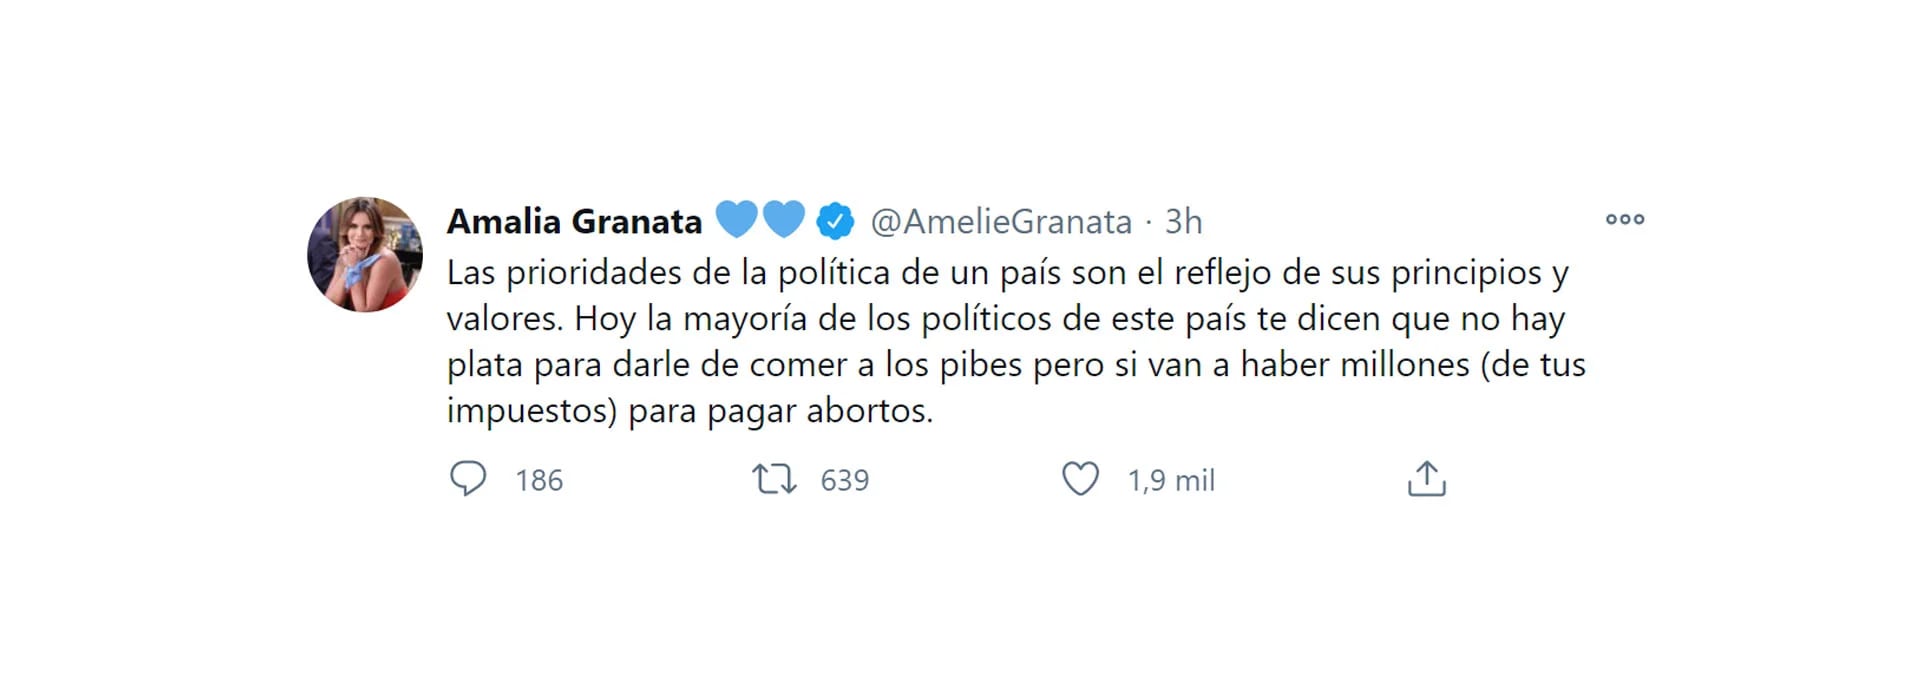 El descargo de Amalia Granata tras la legalización del aborto